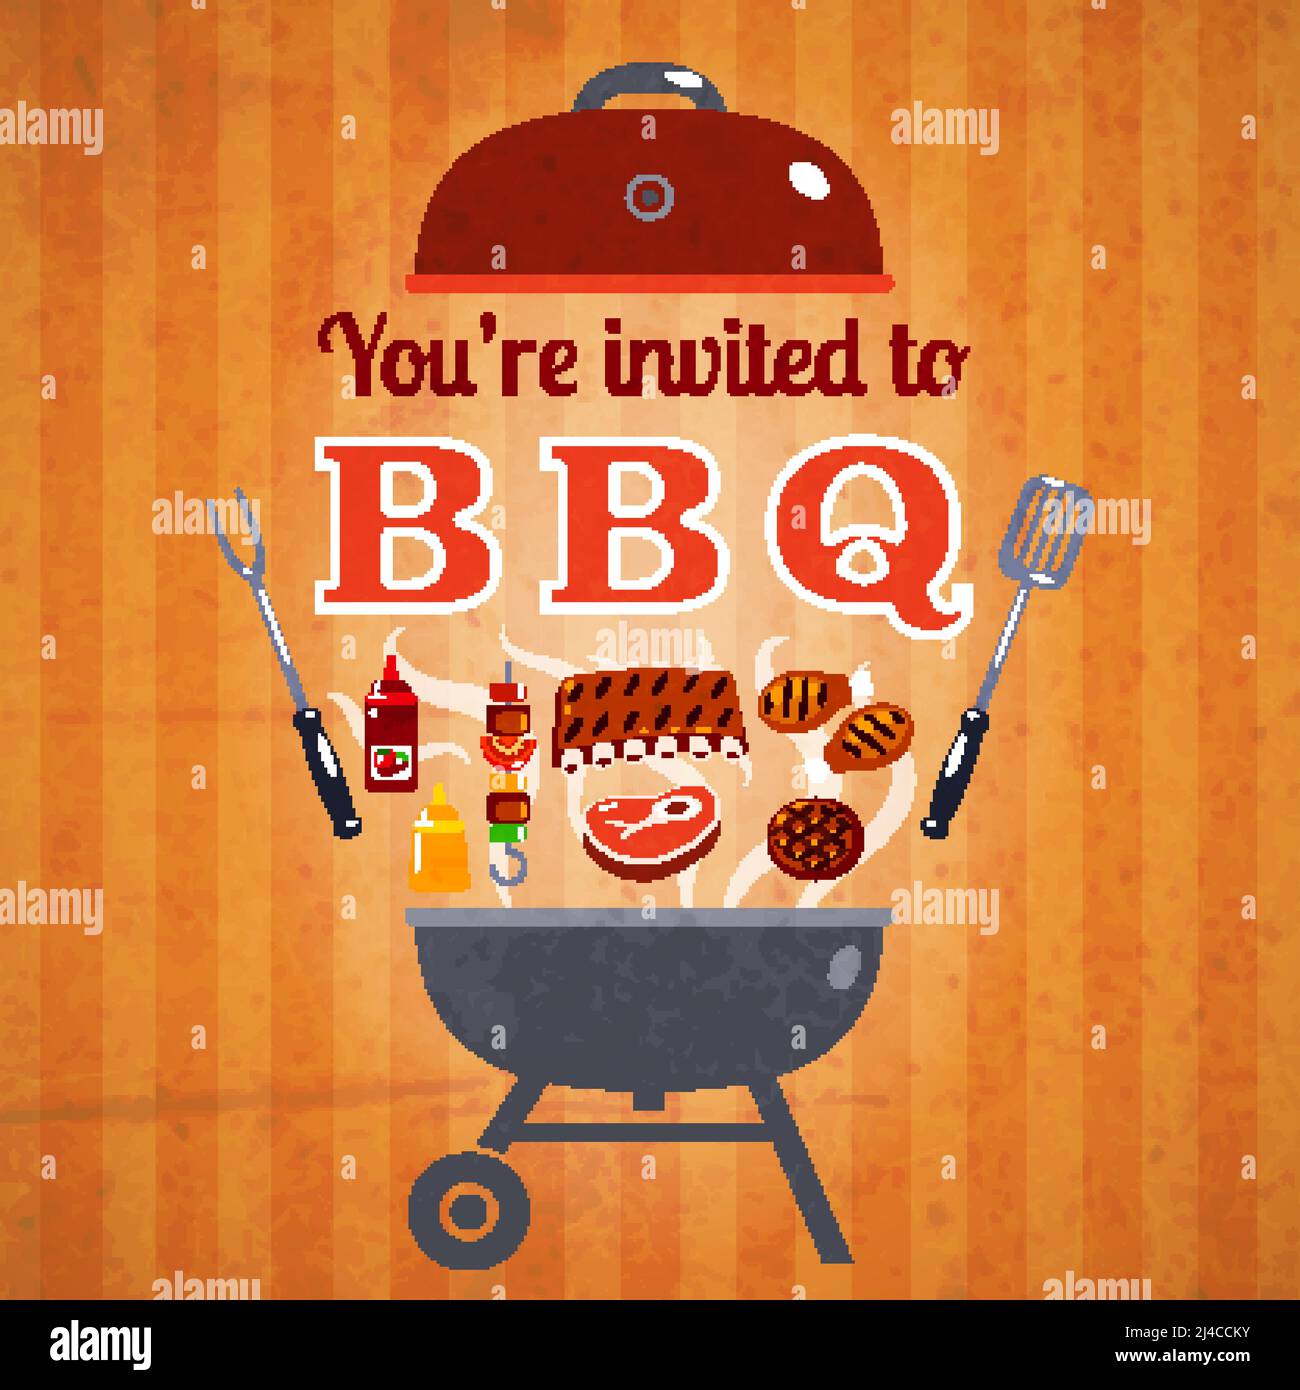 Grill BBQ Party Einladung Ankündigung Billboard mit Steaks Hamburger und Ketchup Poster klassische abstrakte Vektor-Illustration Stock Vektor